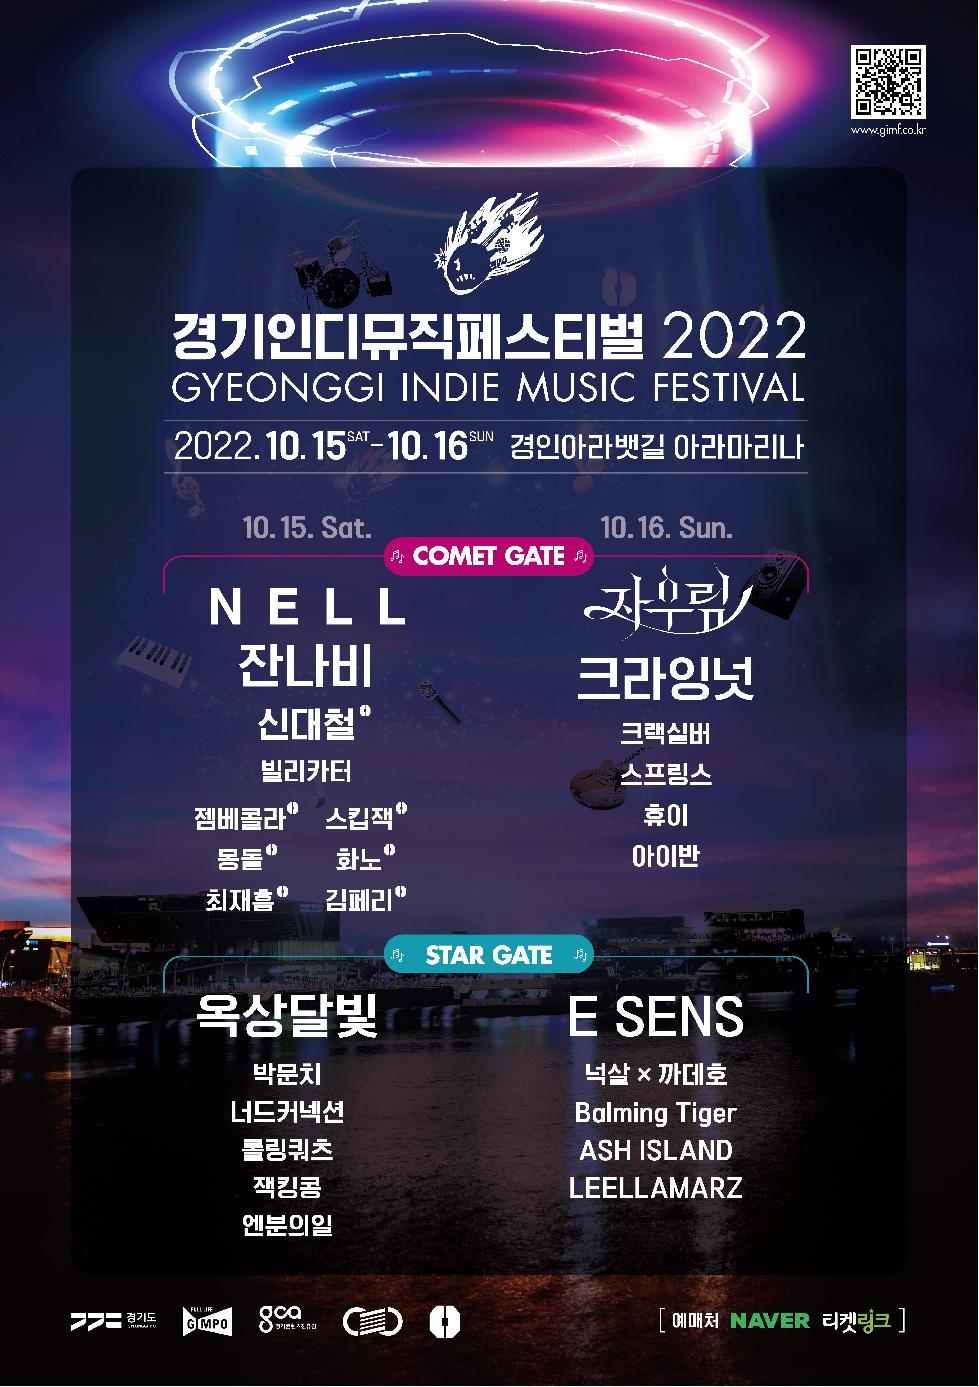 경기도,‘경기인디뮤직페스티벌 2022’ 9월 16일부터 공식 티켓 판매